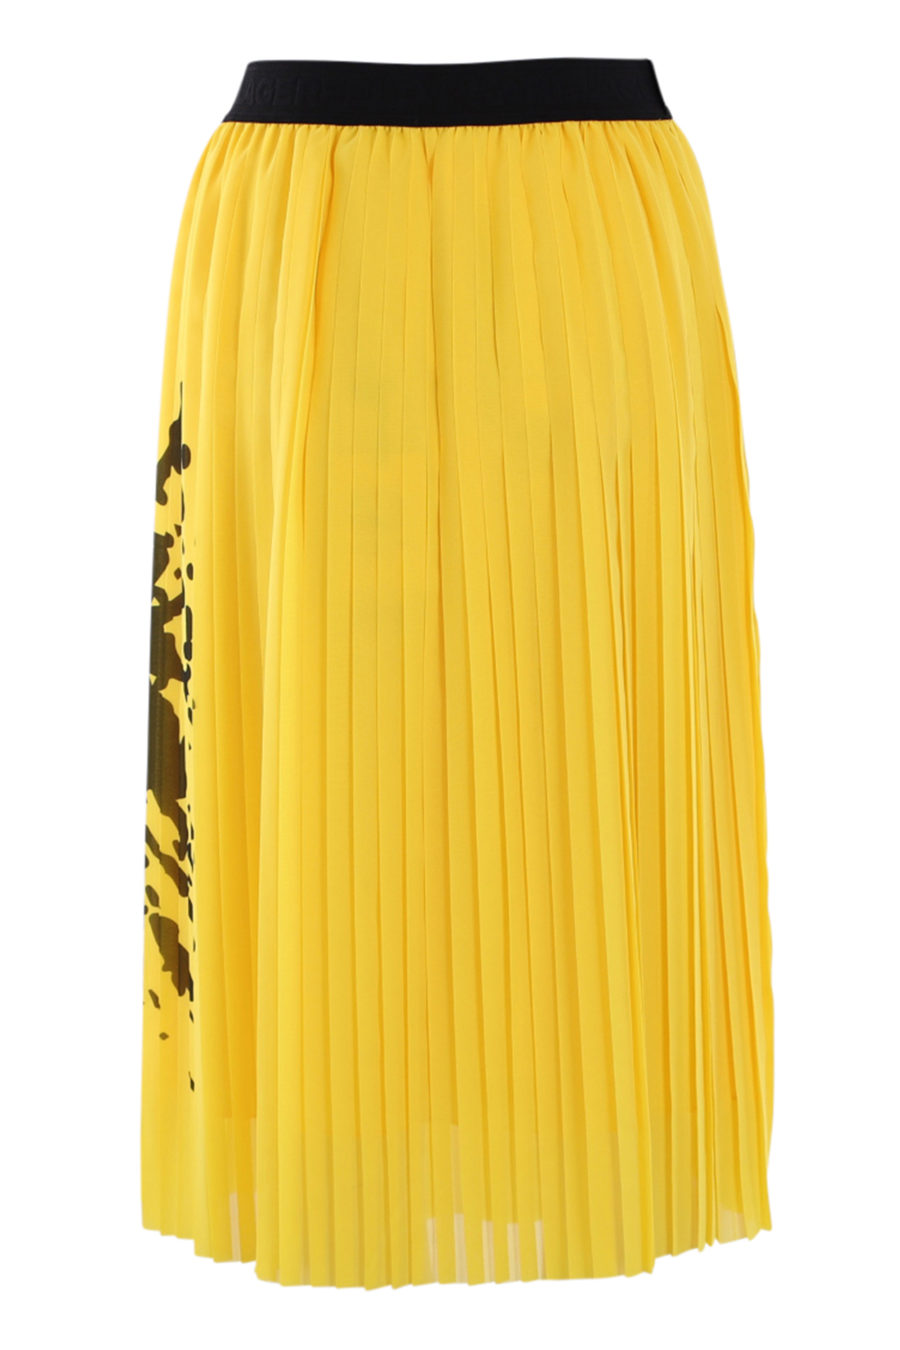 Falda amarilla con logo "smiley" - IMG 0547